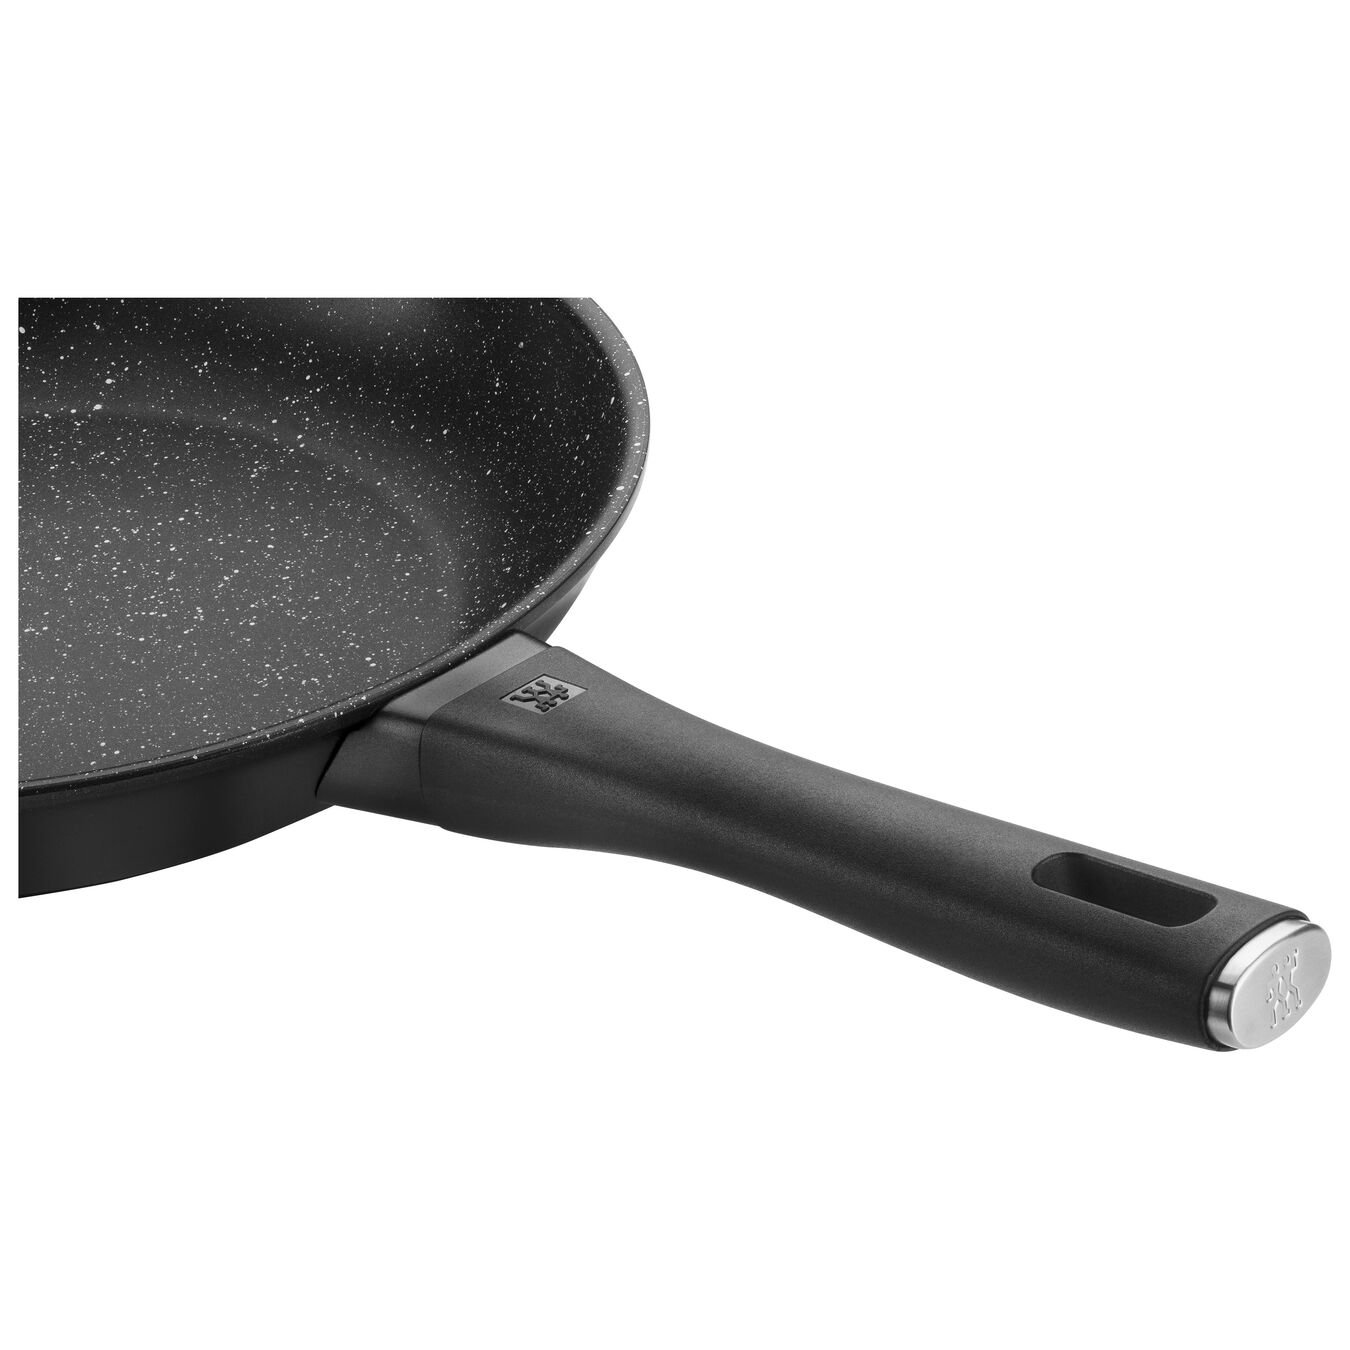 28 cm Aluminium Frying pan black,,large 6